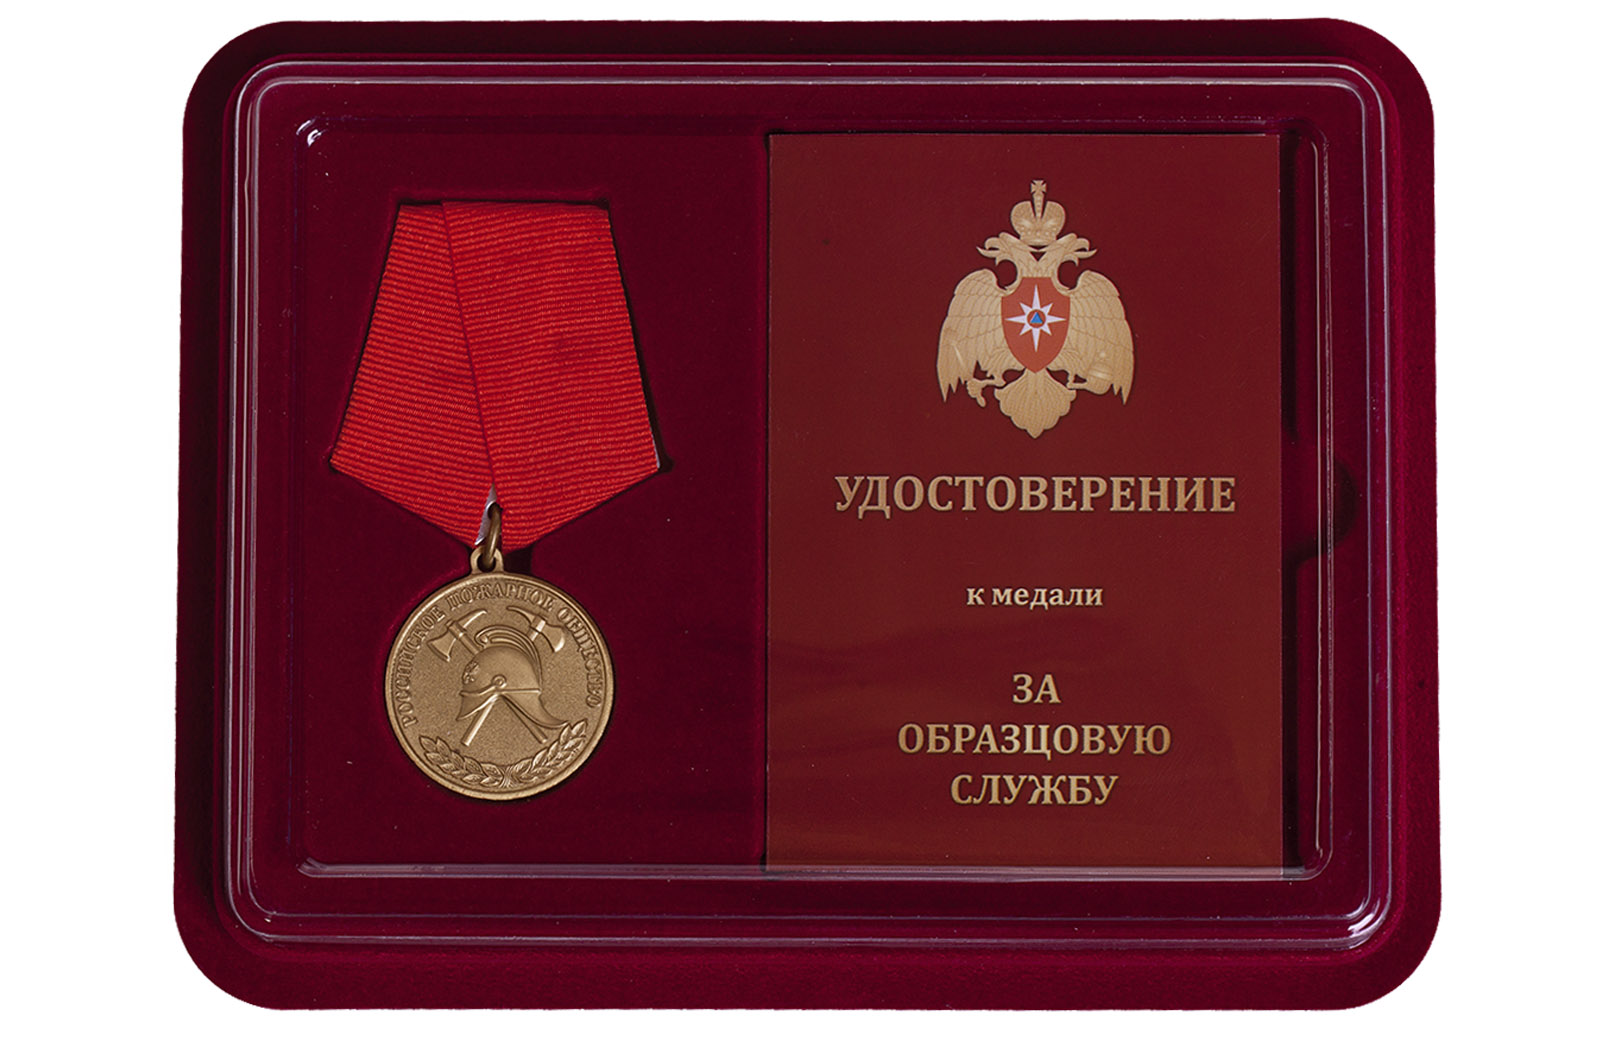 Купить медаль Российского пожарного общества За образцовую службу в подарок